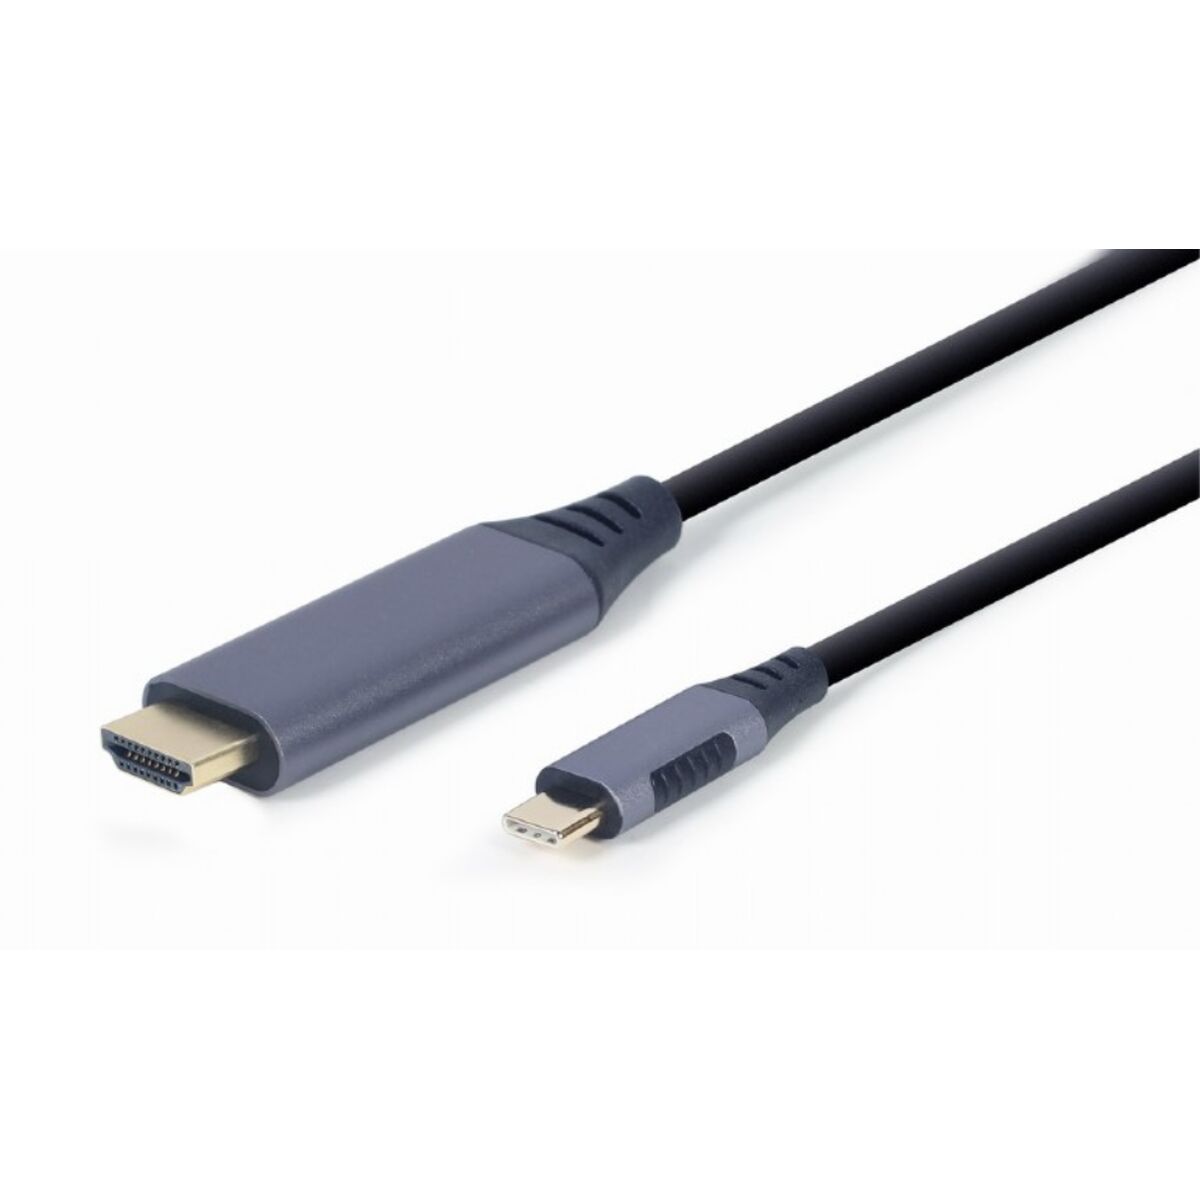 Cable adaptador DisplayPort a VGA, blanco (A-DPM-VGAF-02-W)